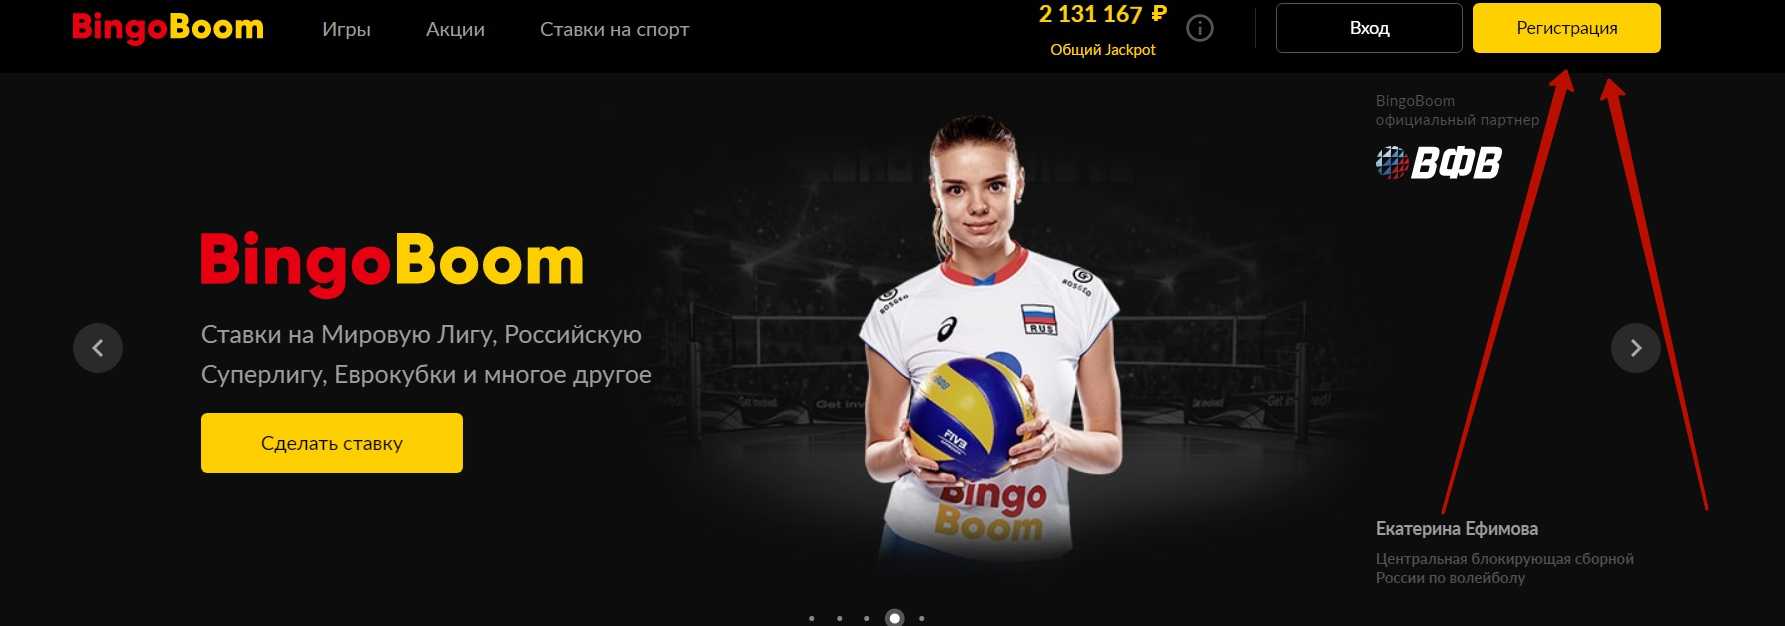 Bingoboom ru официальный сайт ставки на спорт 7 покердом